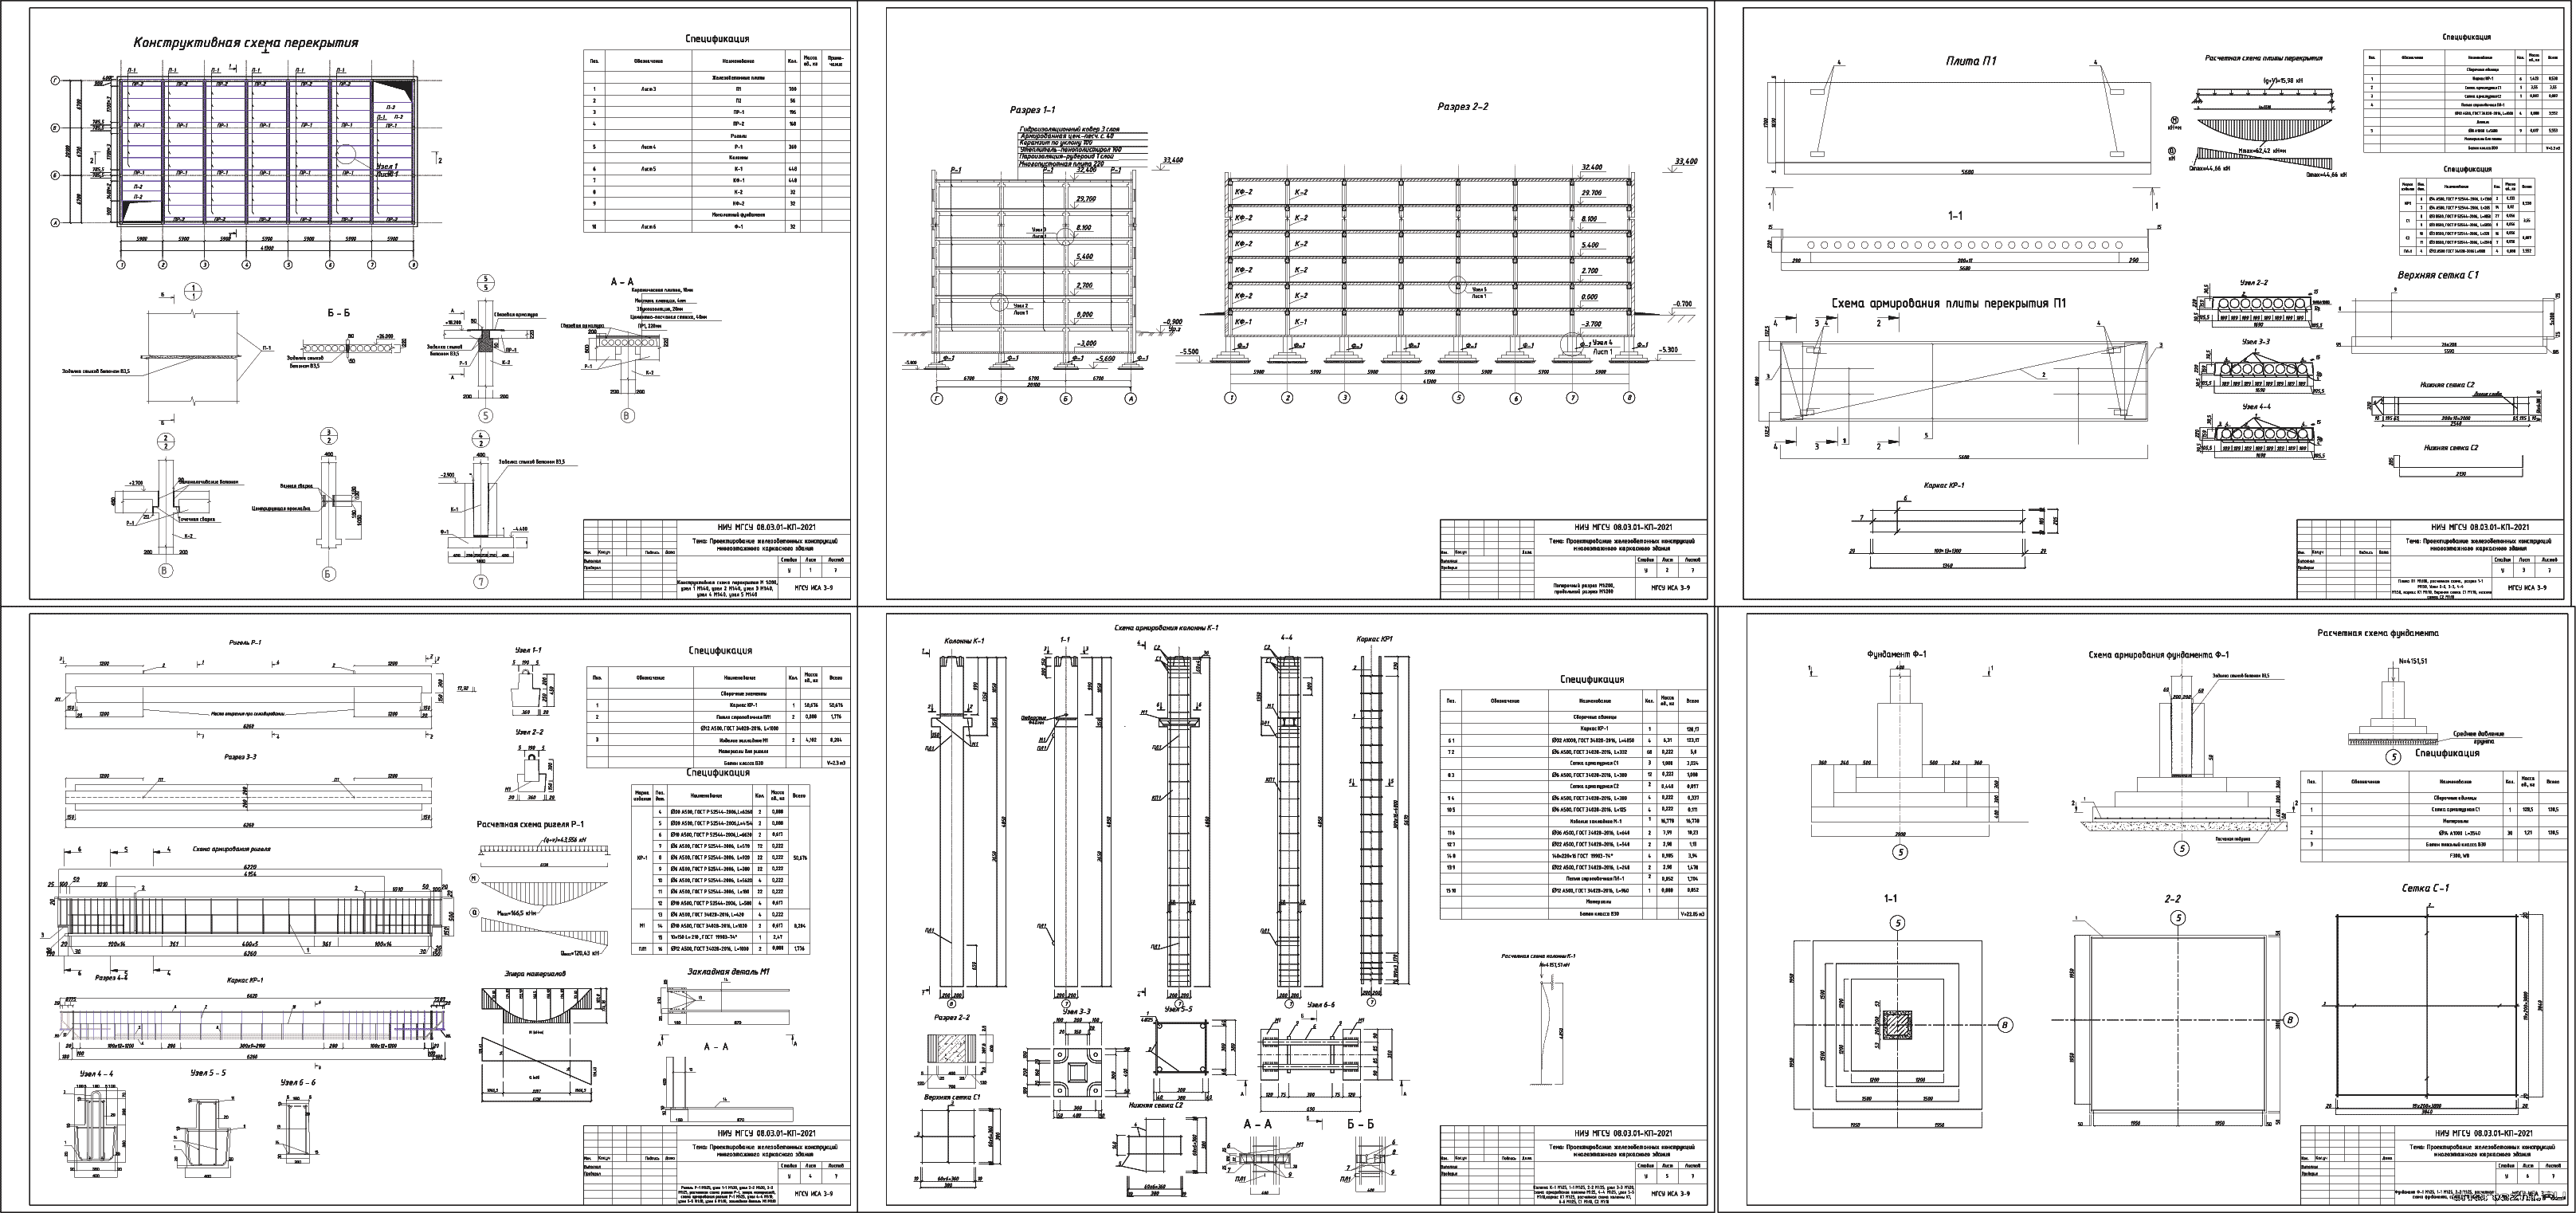 Курсовой проект - Проектирование несущих конструкций 12-ти этажного каркасного здания 41,3 х 20,1 м в г. Орел